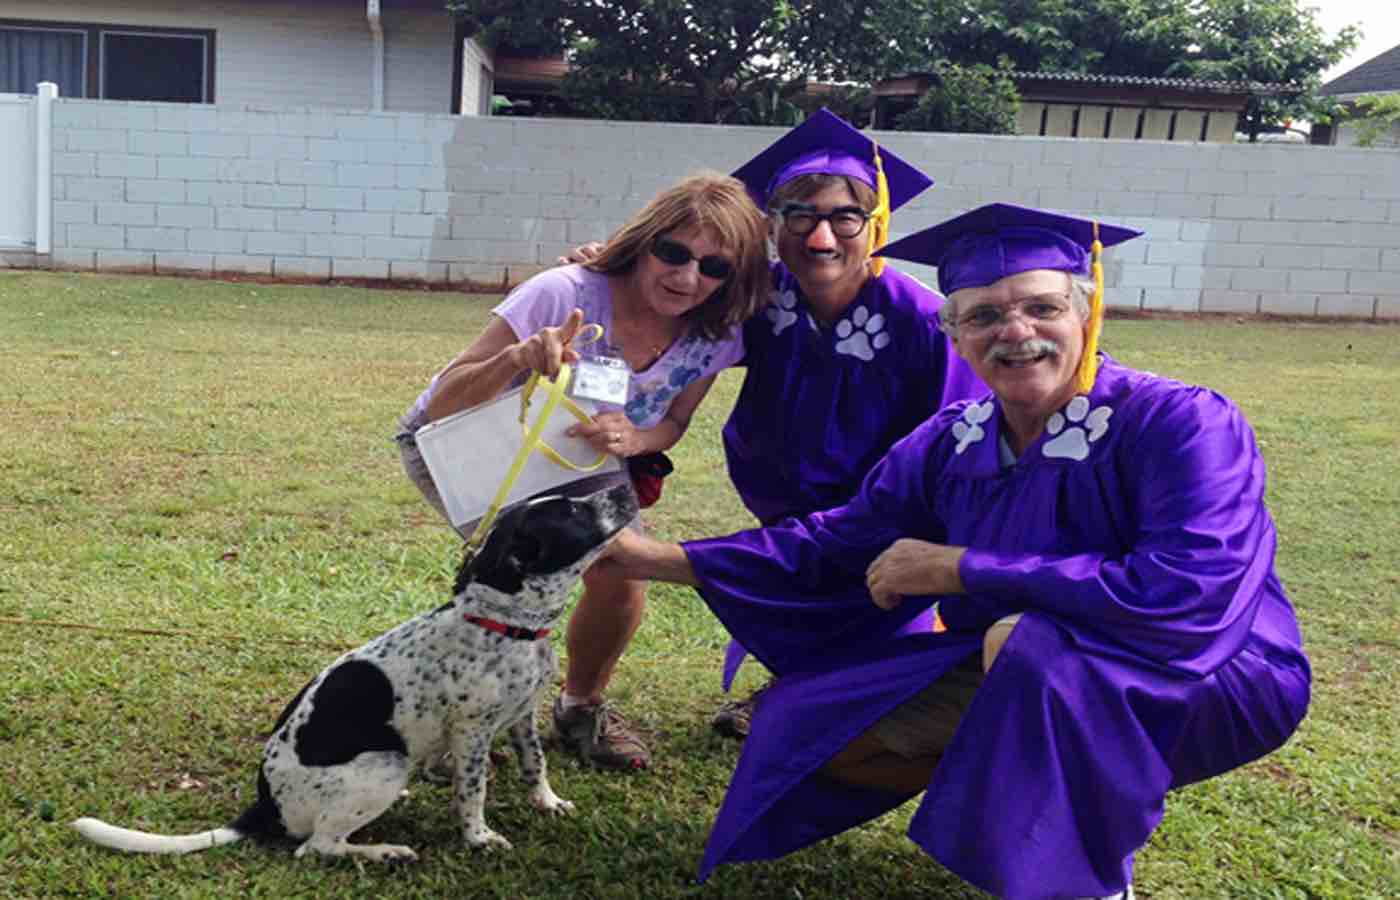 Dog graduation